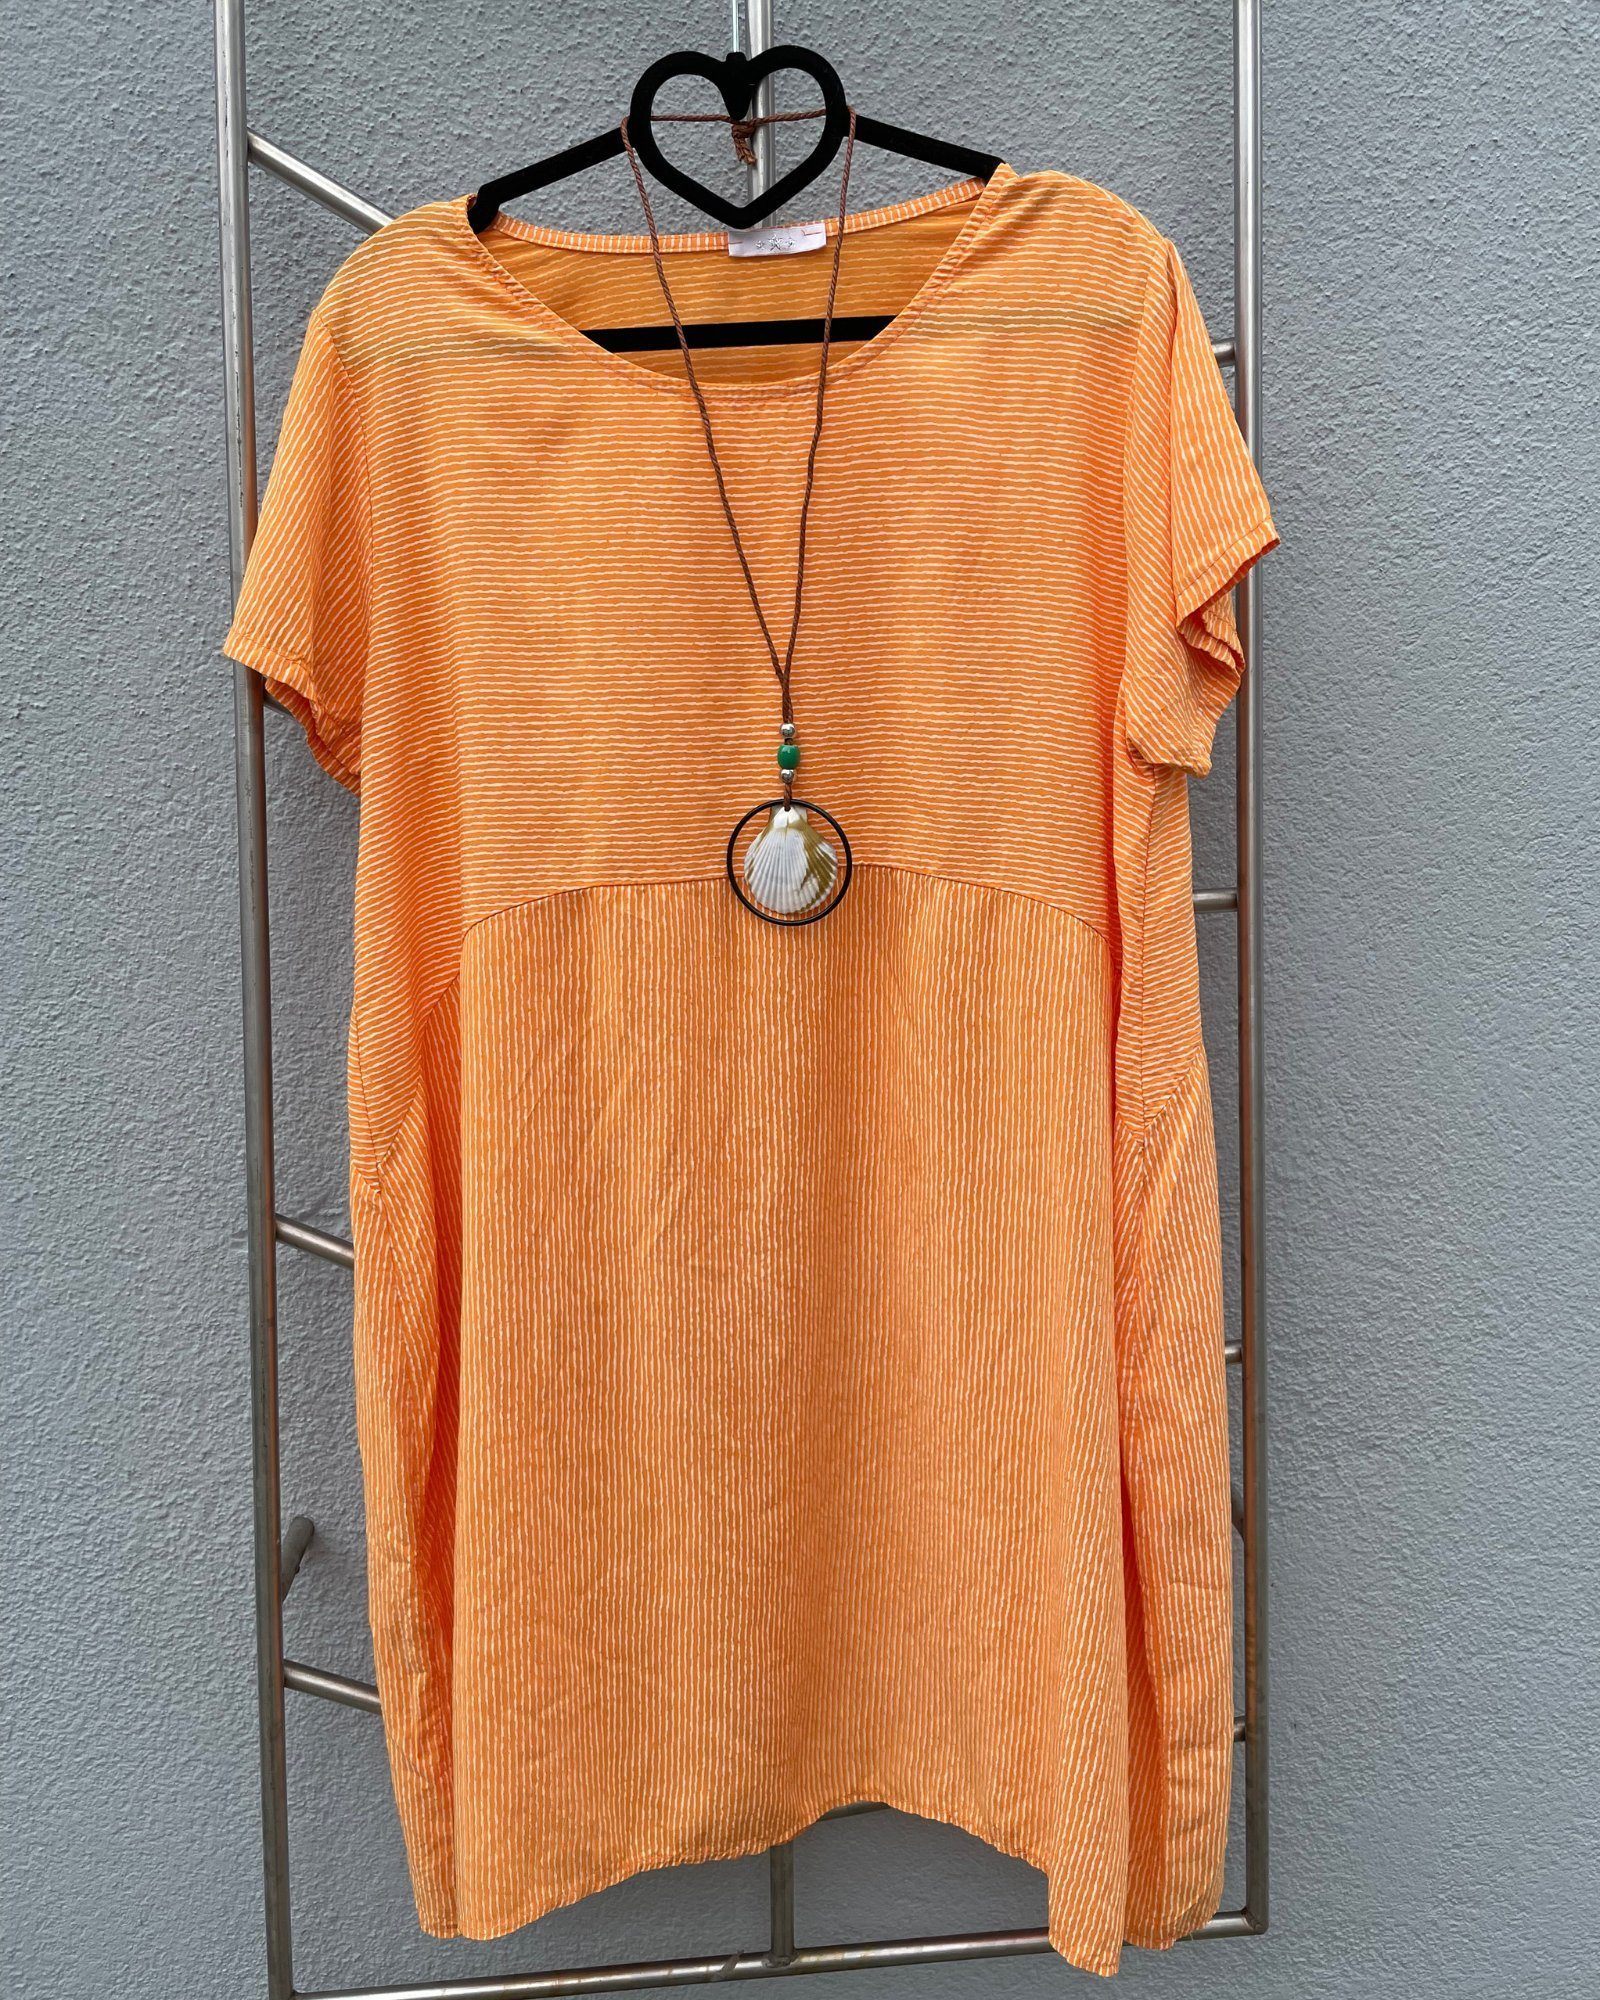 ITALY VIBES Shirtkleid - weites Midikleid SANDRA - kurzarm Kleid mit gratis Kette - ONE SIZE passt hier Gr. S - XXL orange/weiß